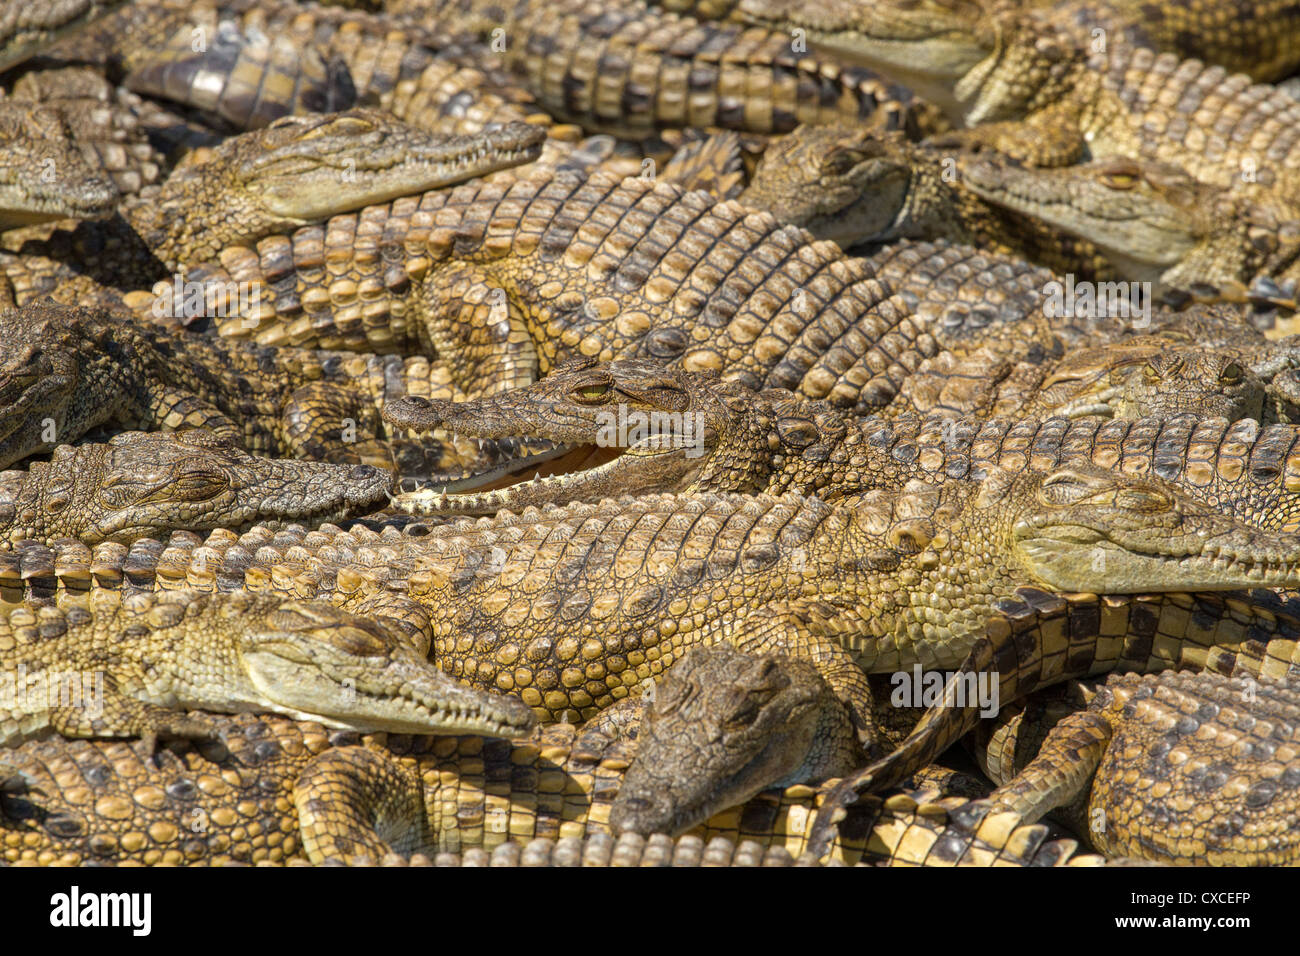 Massa di coccodrilli giovani (Crocodylus niloticus) presso l'allevamento di coccodrilli vicino a Siavonga, Zambia Foto Stock